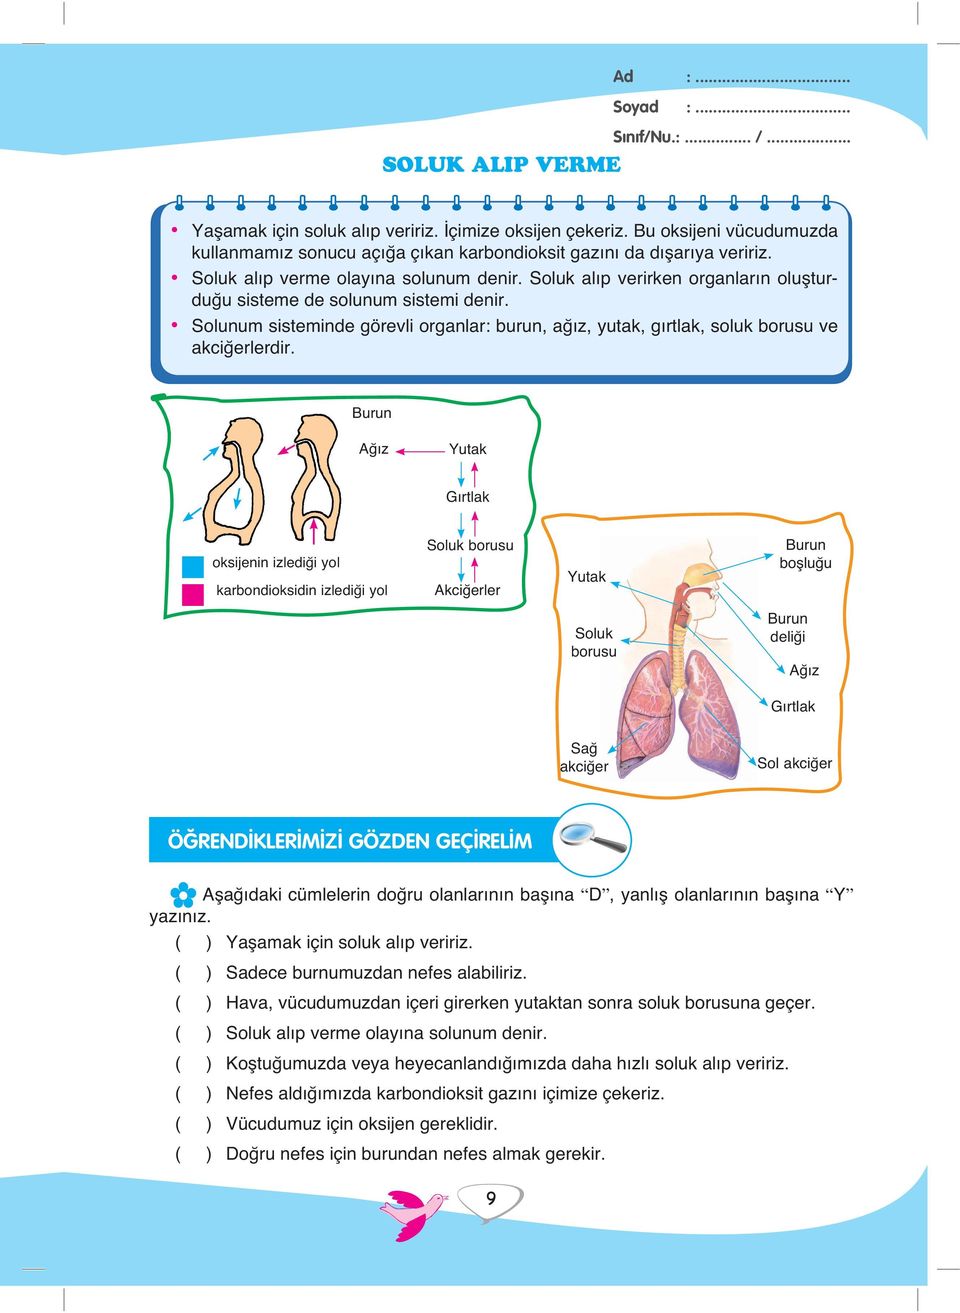 Solunum sisteminde görevli organlar: burun, ağız, yutak, gırtlak, soluk borusu ve akciğerlerdir.